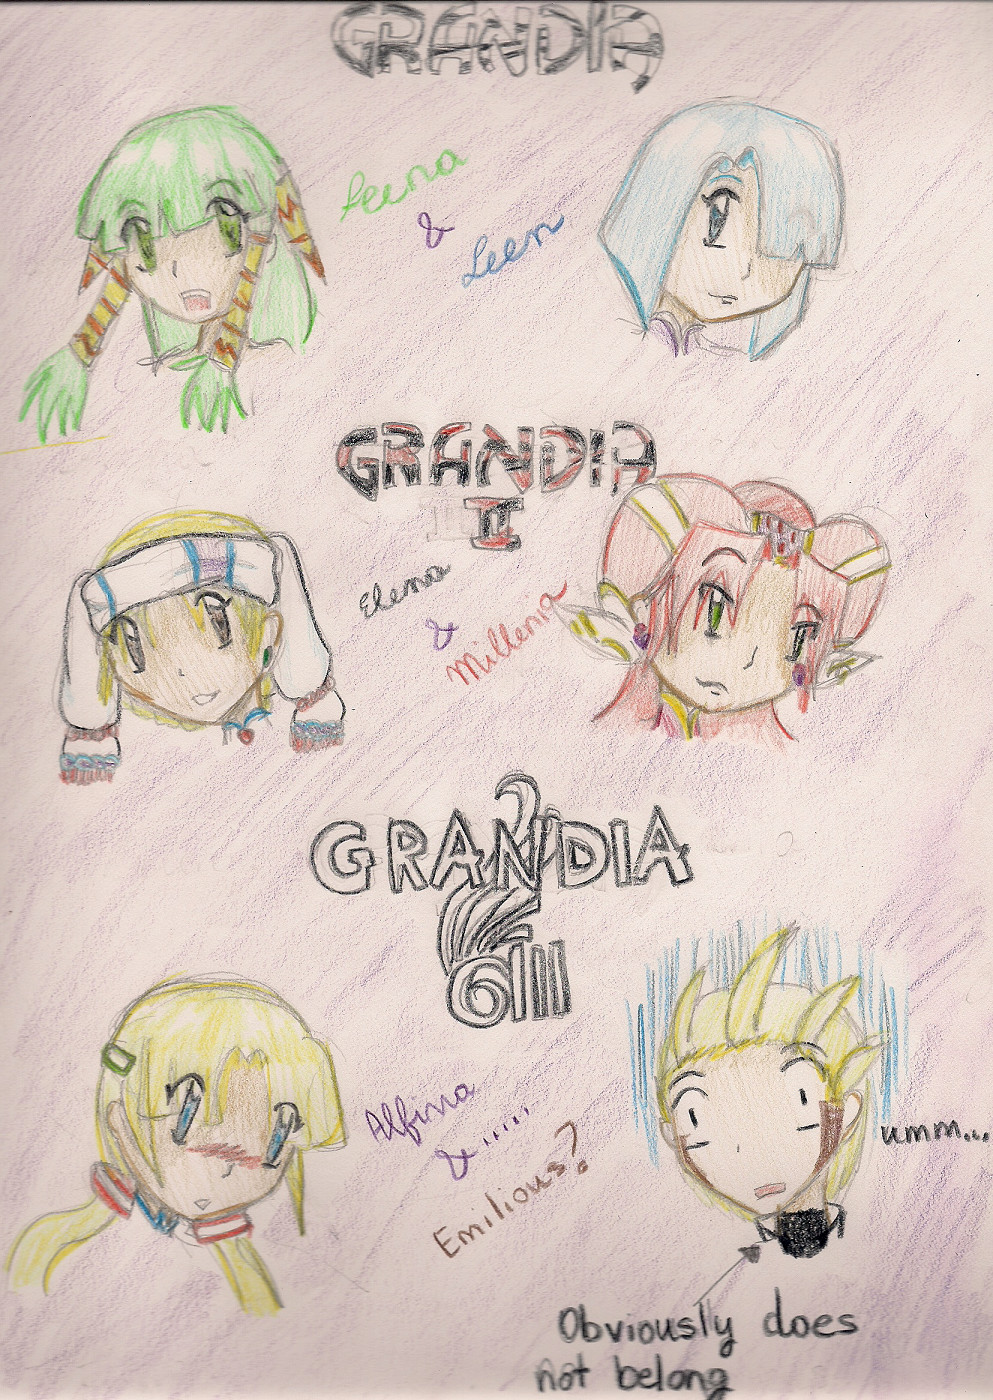 Grandia "Siblings" by Sorasgirl01